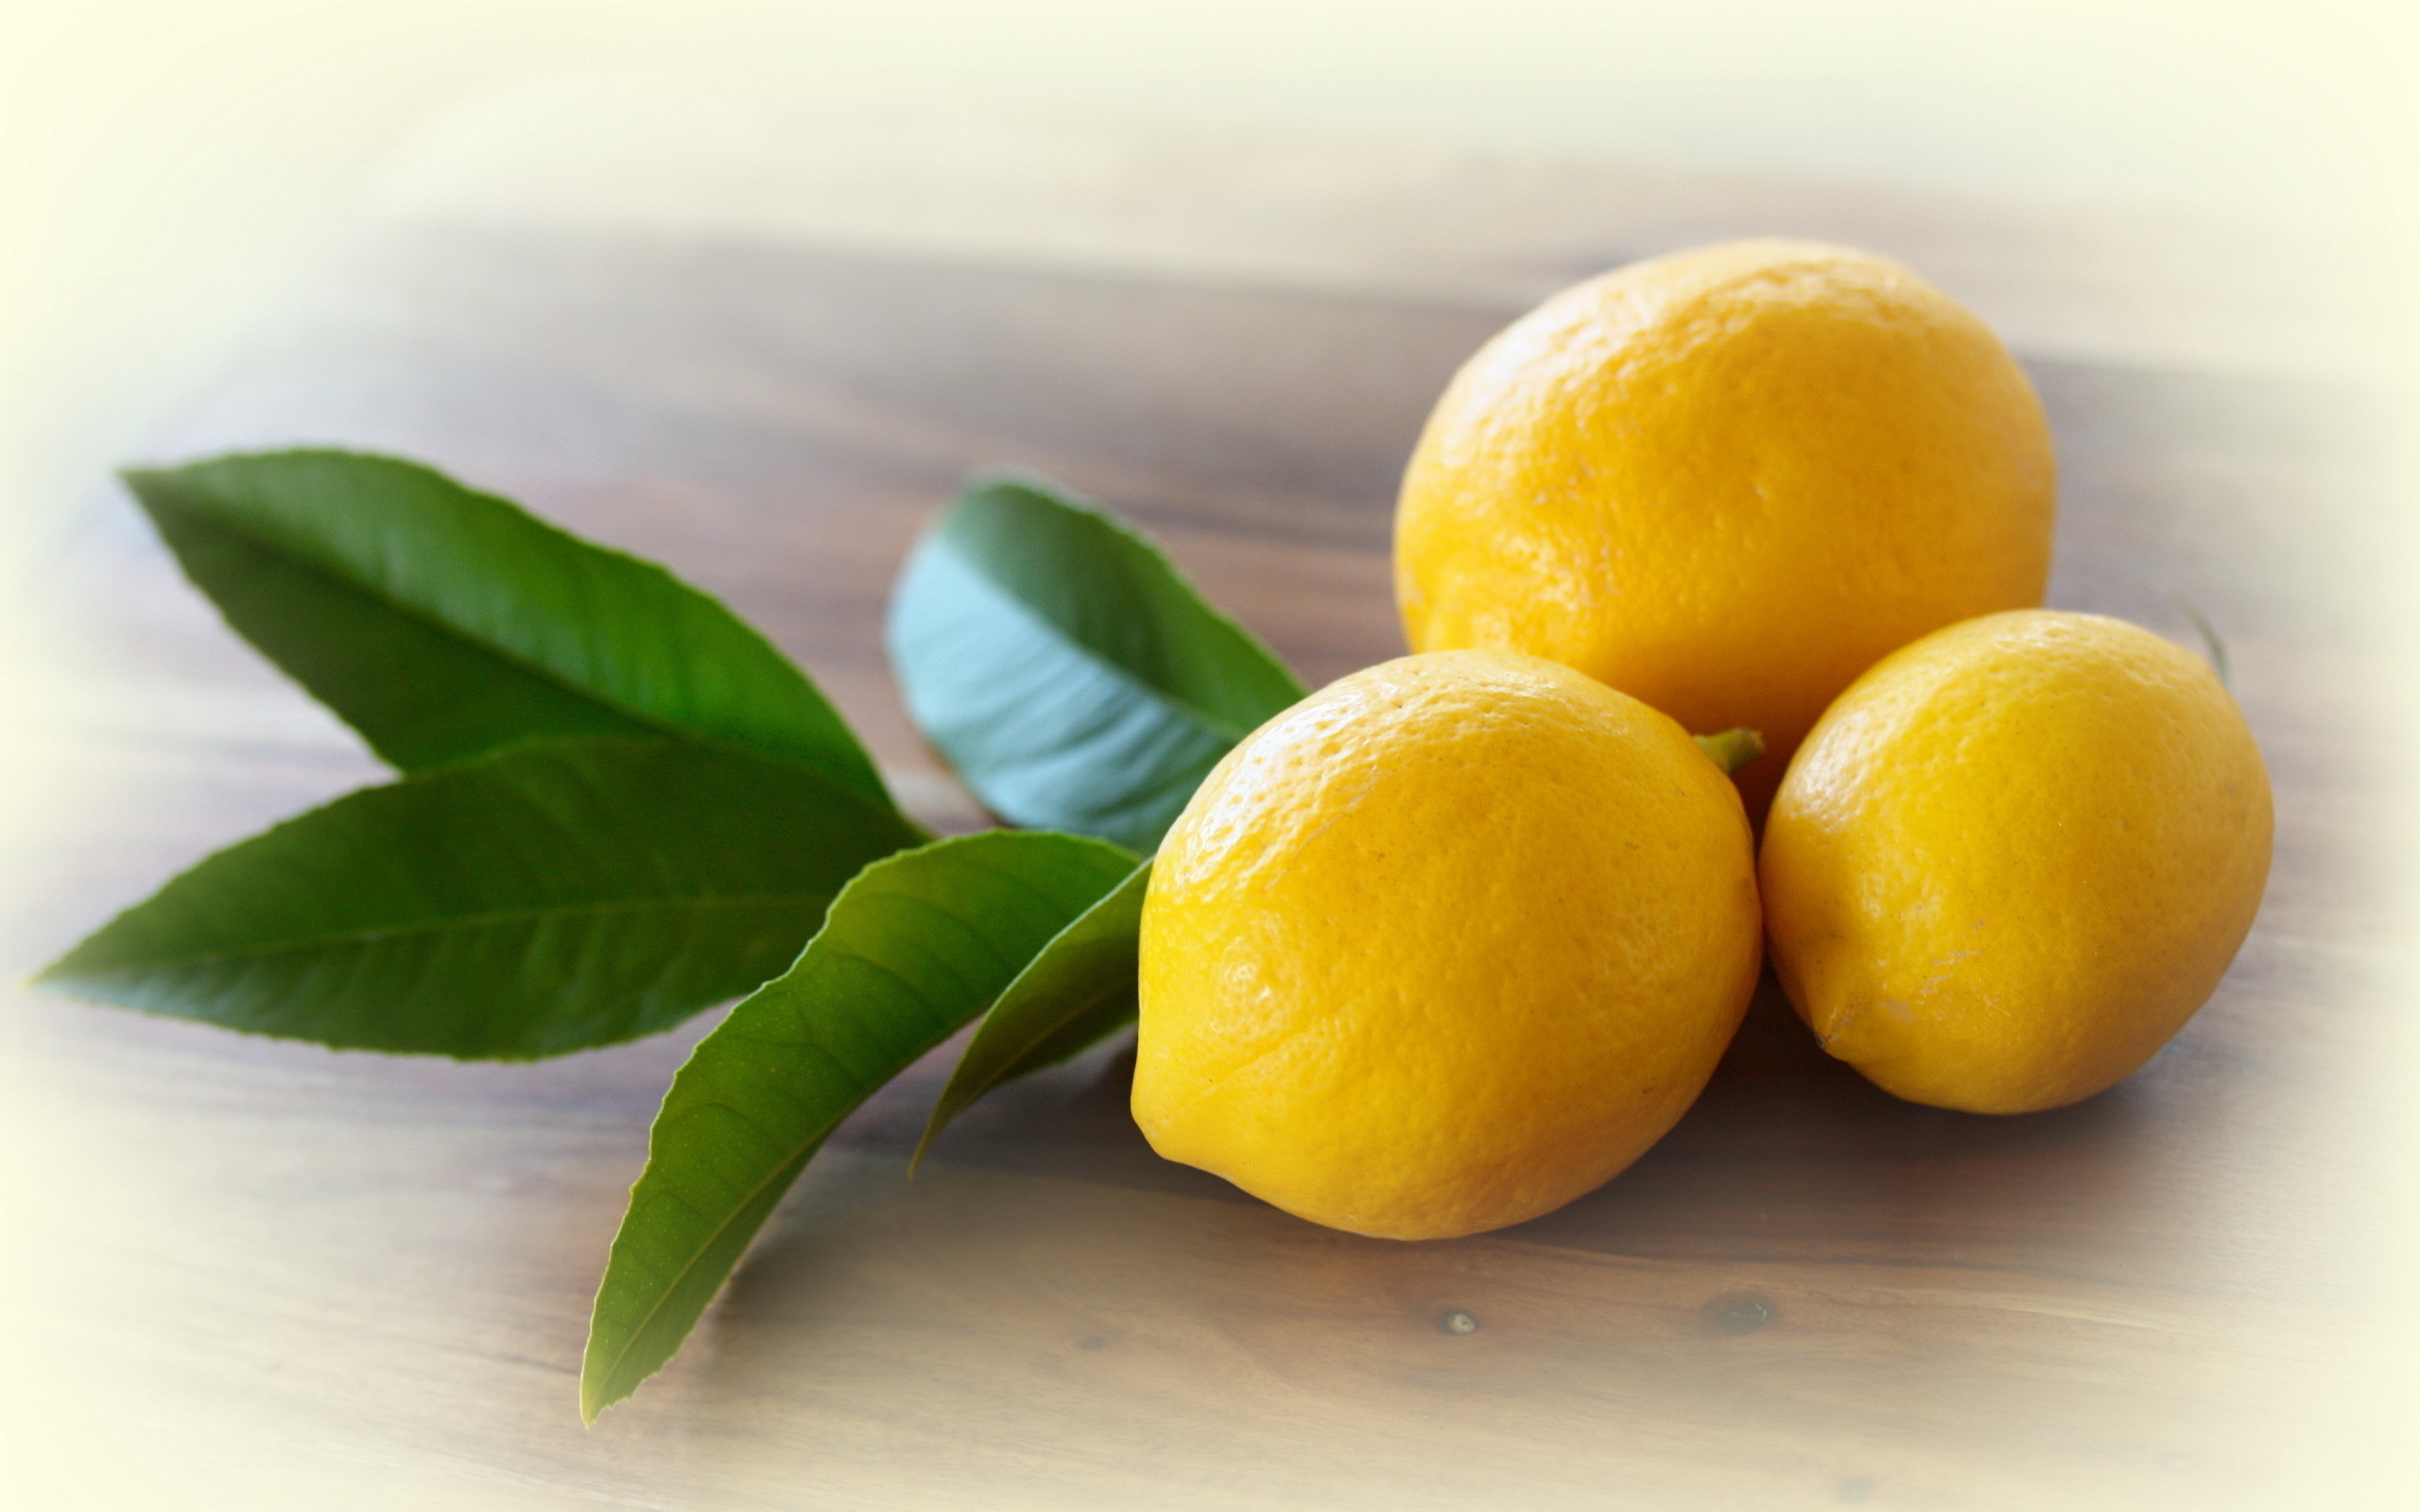 Лимон на ветке капли бесплатно